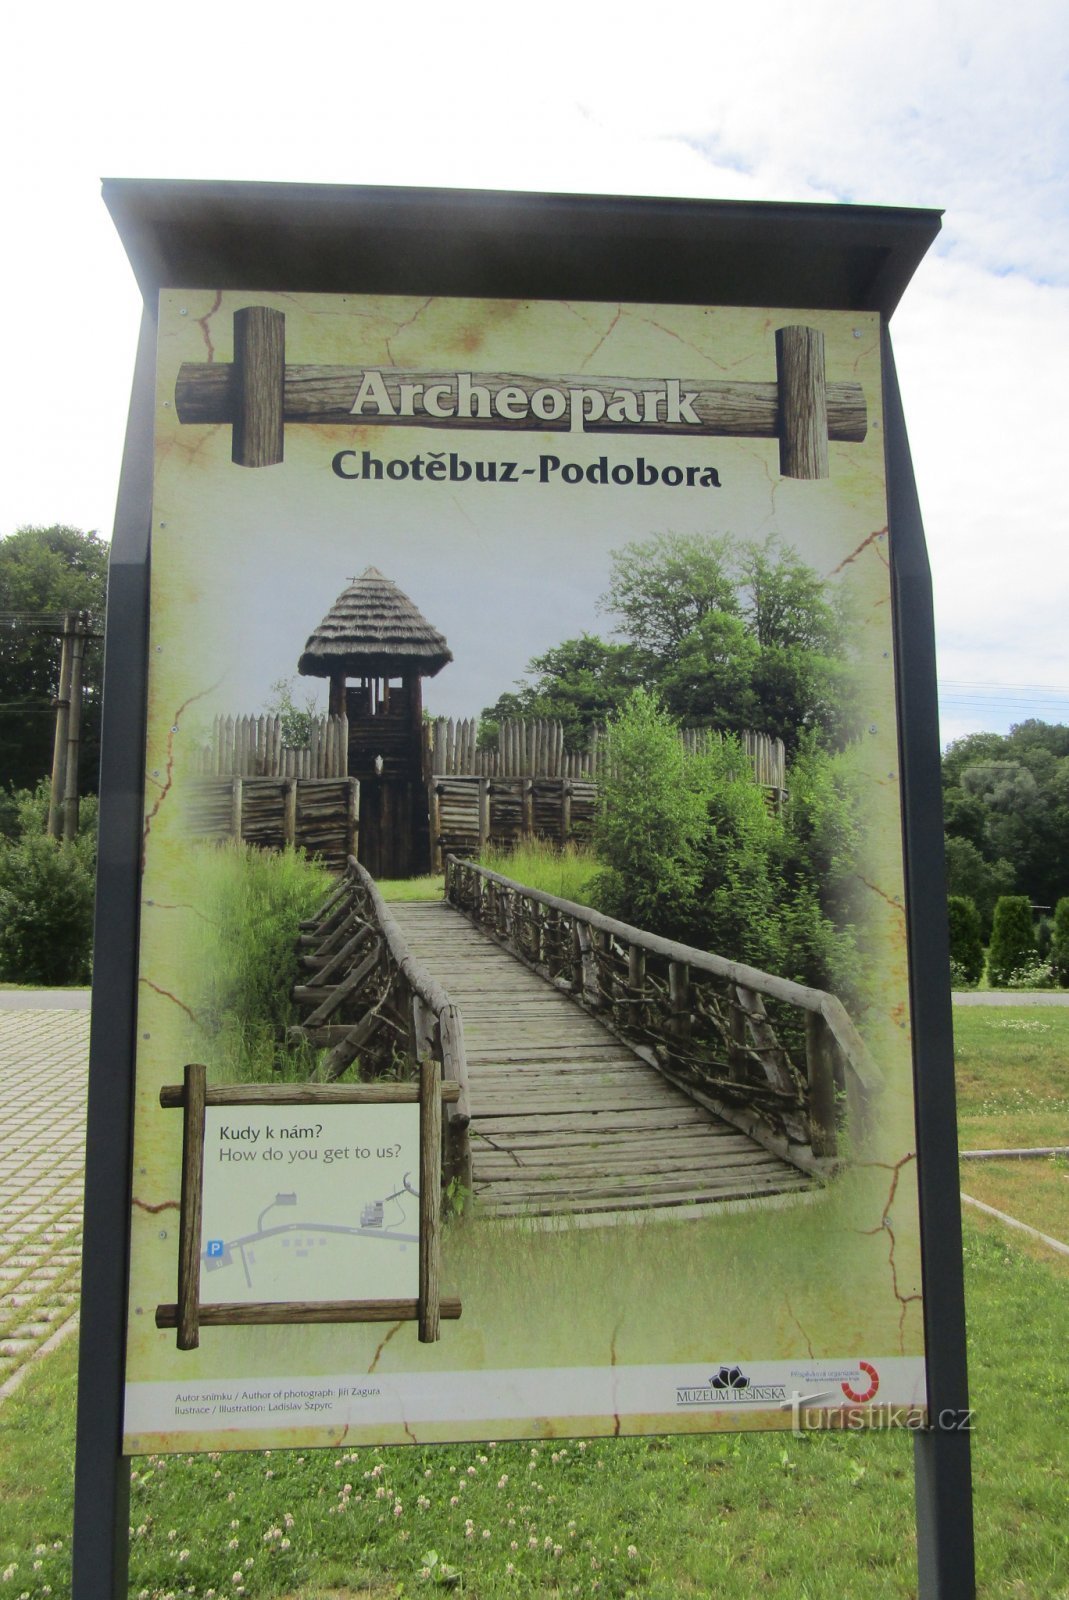 Αρχαιό πάρκο στο Chotěbuza-Podobor